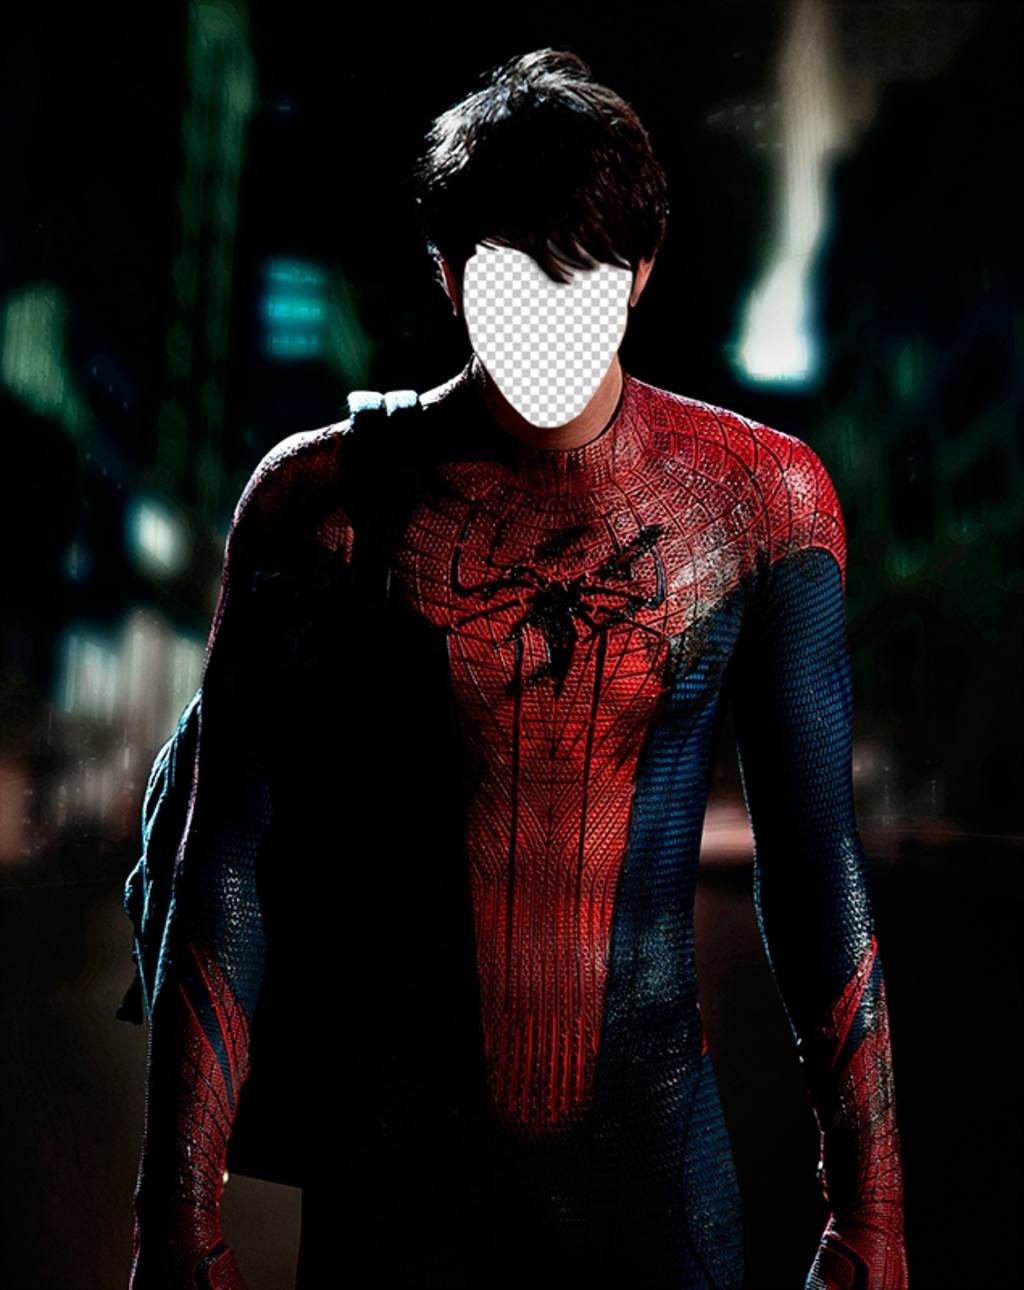 Mit dieser Fotomontage halten Sie Ihr Gesicht auf den Körper von Spiderman ..